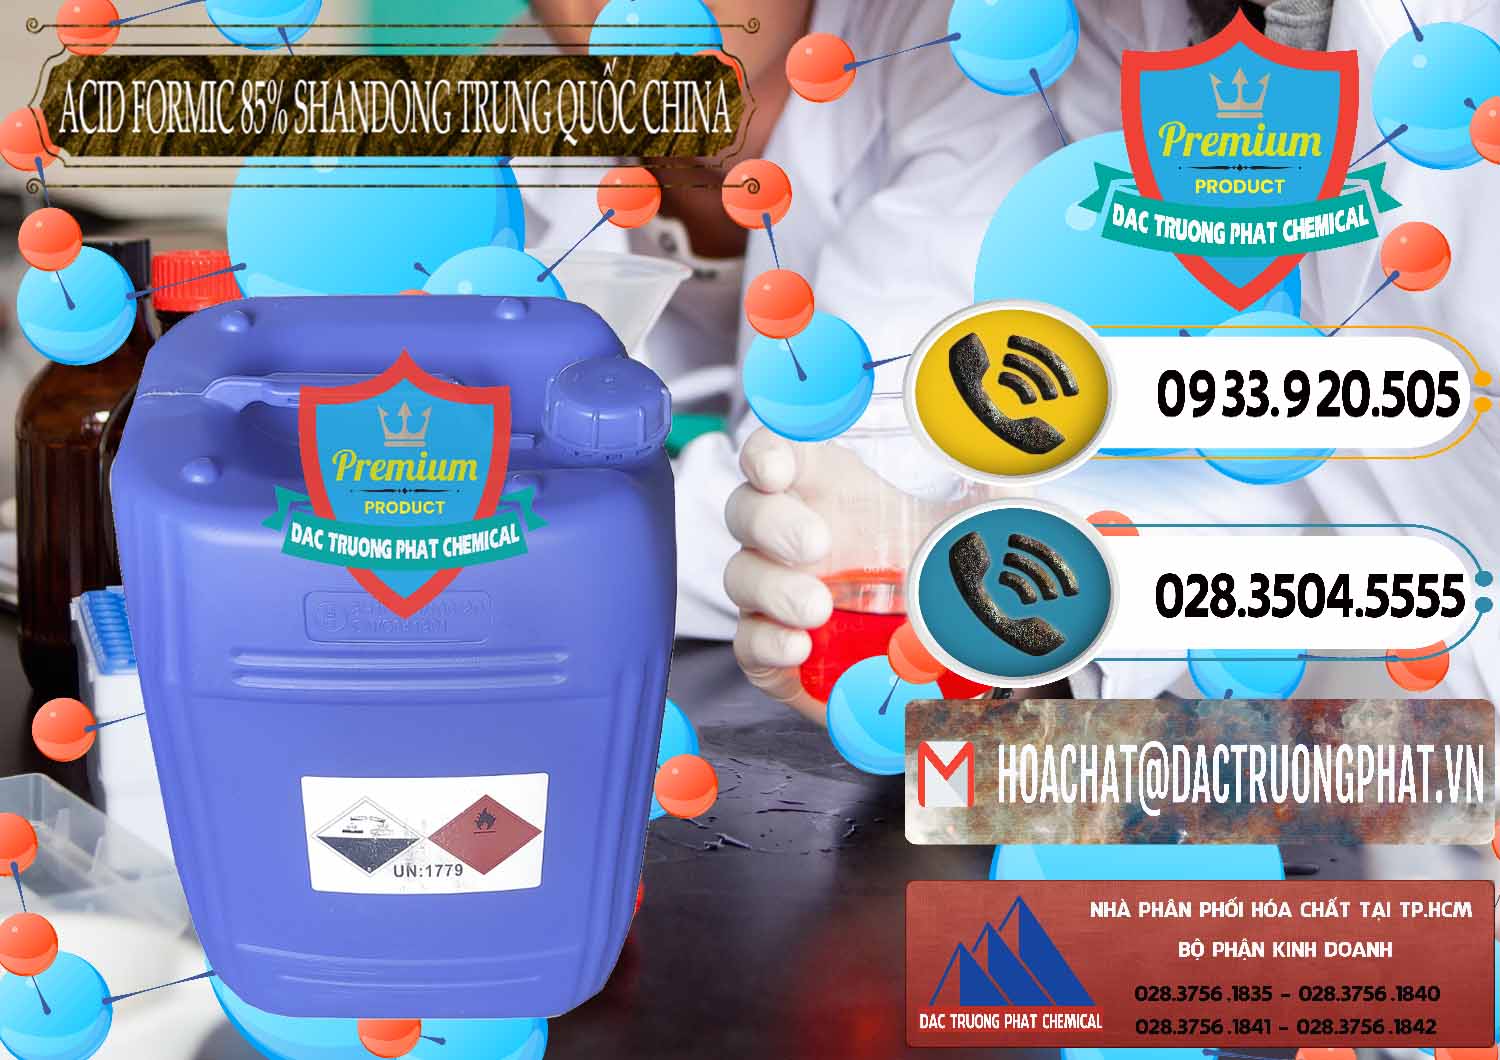 Nhà cung cấp và bán Acid Formic - Axit Formic 85% Shandong Trung Quốc China - 0235 - Nơi phân phối ( cung cấp ) hóa chất tại TP.HCM - hoachatdetnhuom.vn